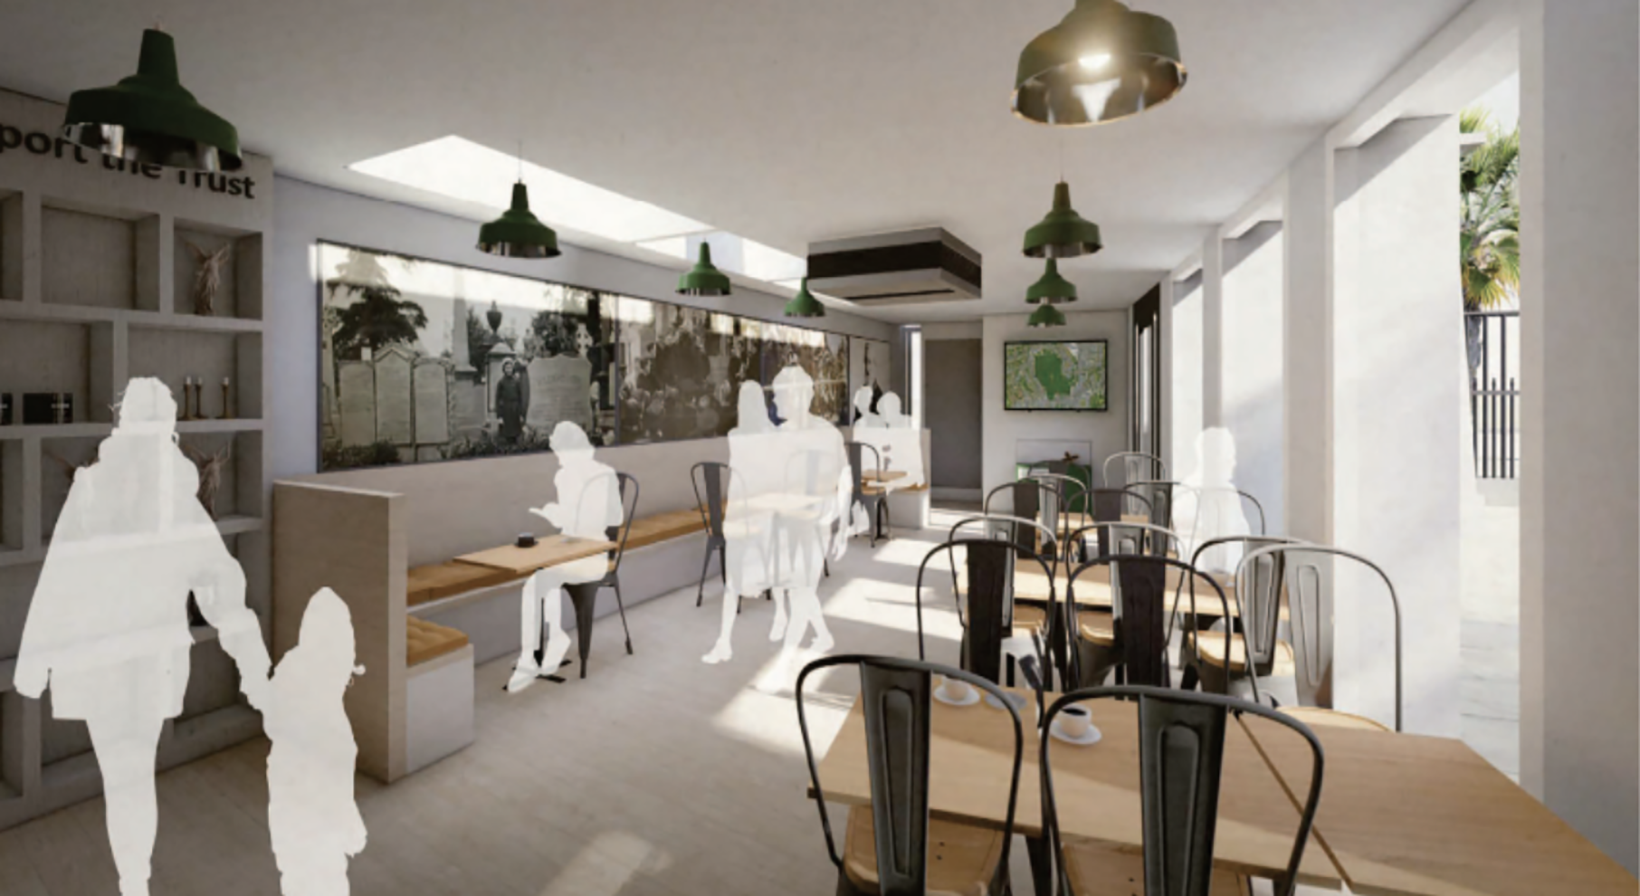 Tender: Brand new café in Abney Park